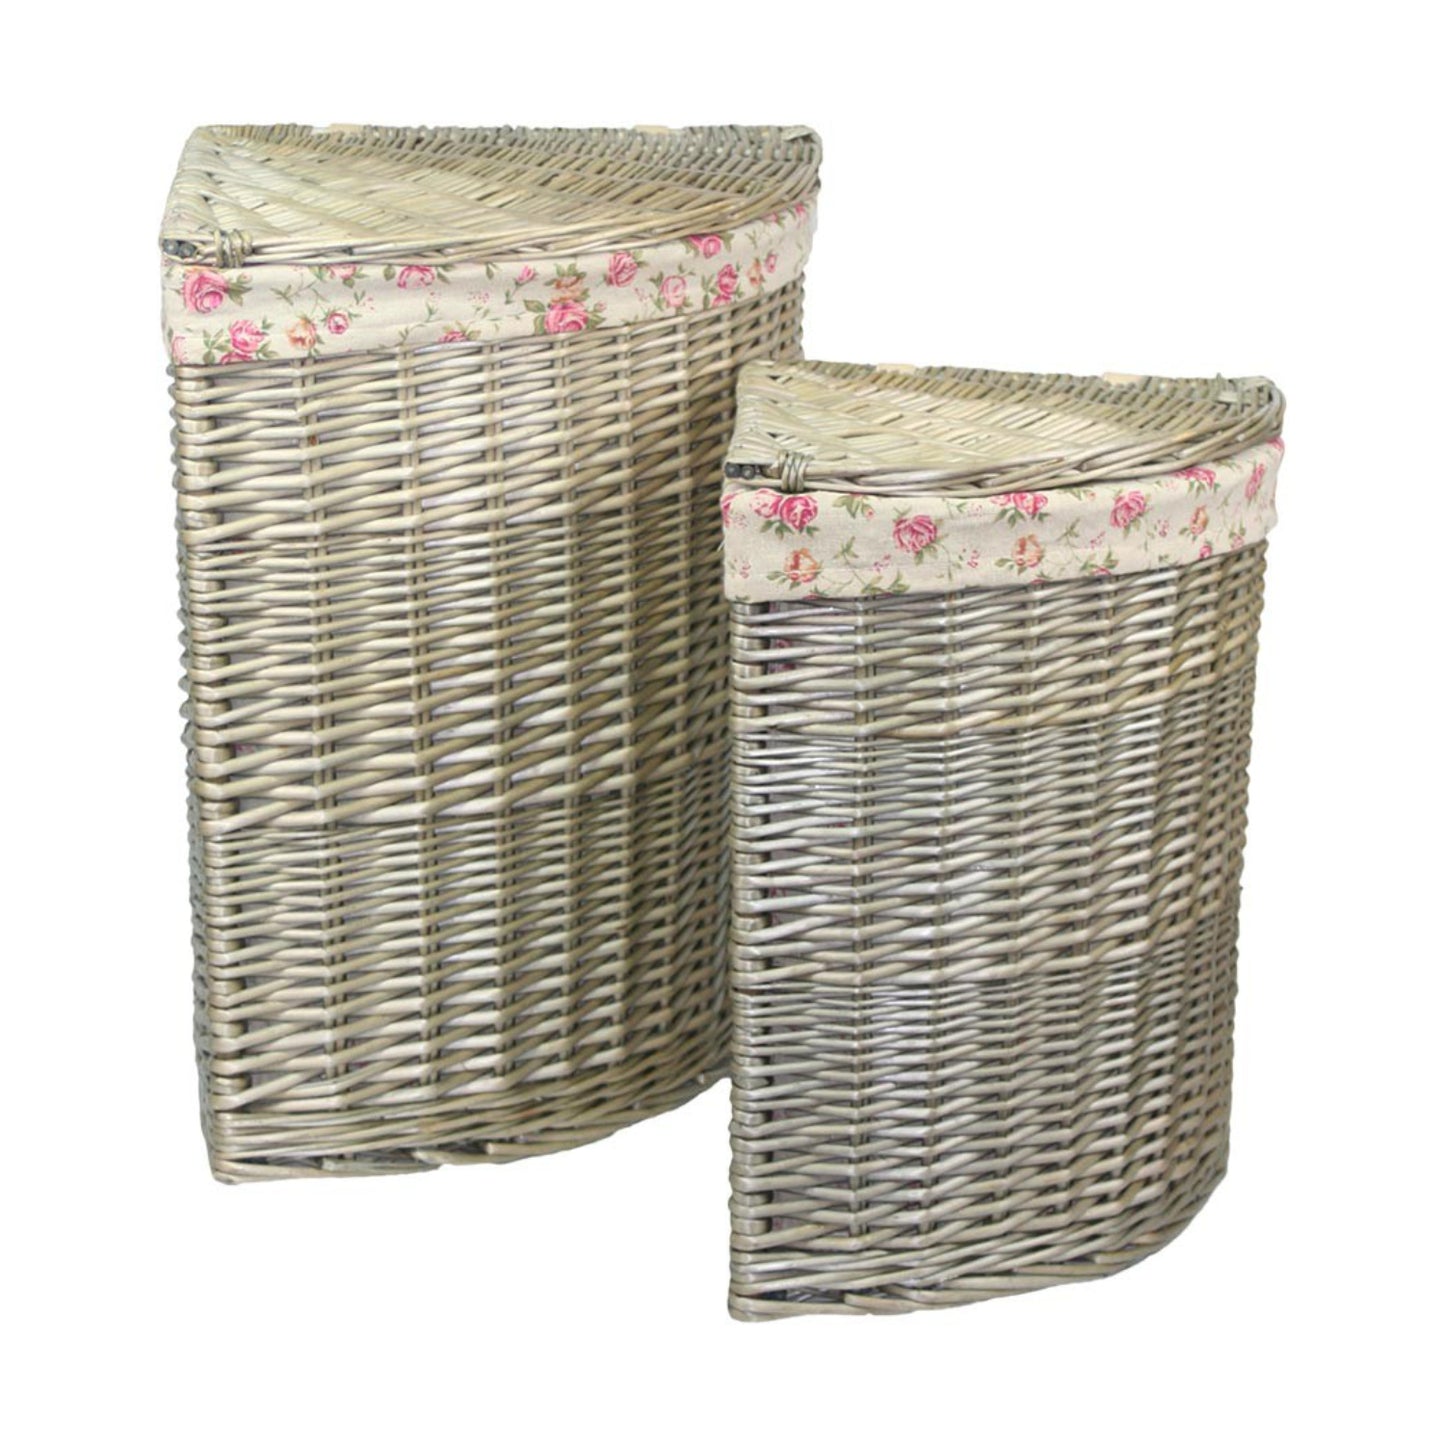 Antique Wash Corner Linen Basket With Garden Rose Lining Set 2